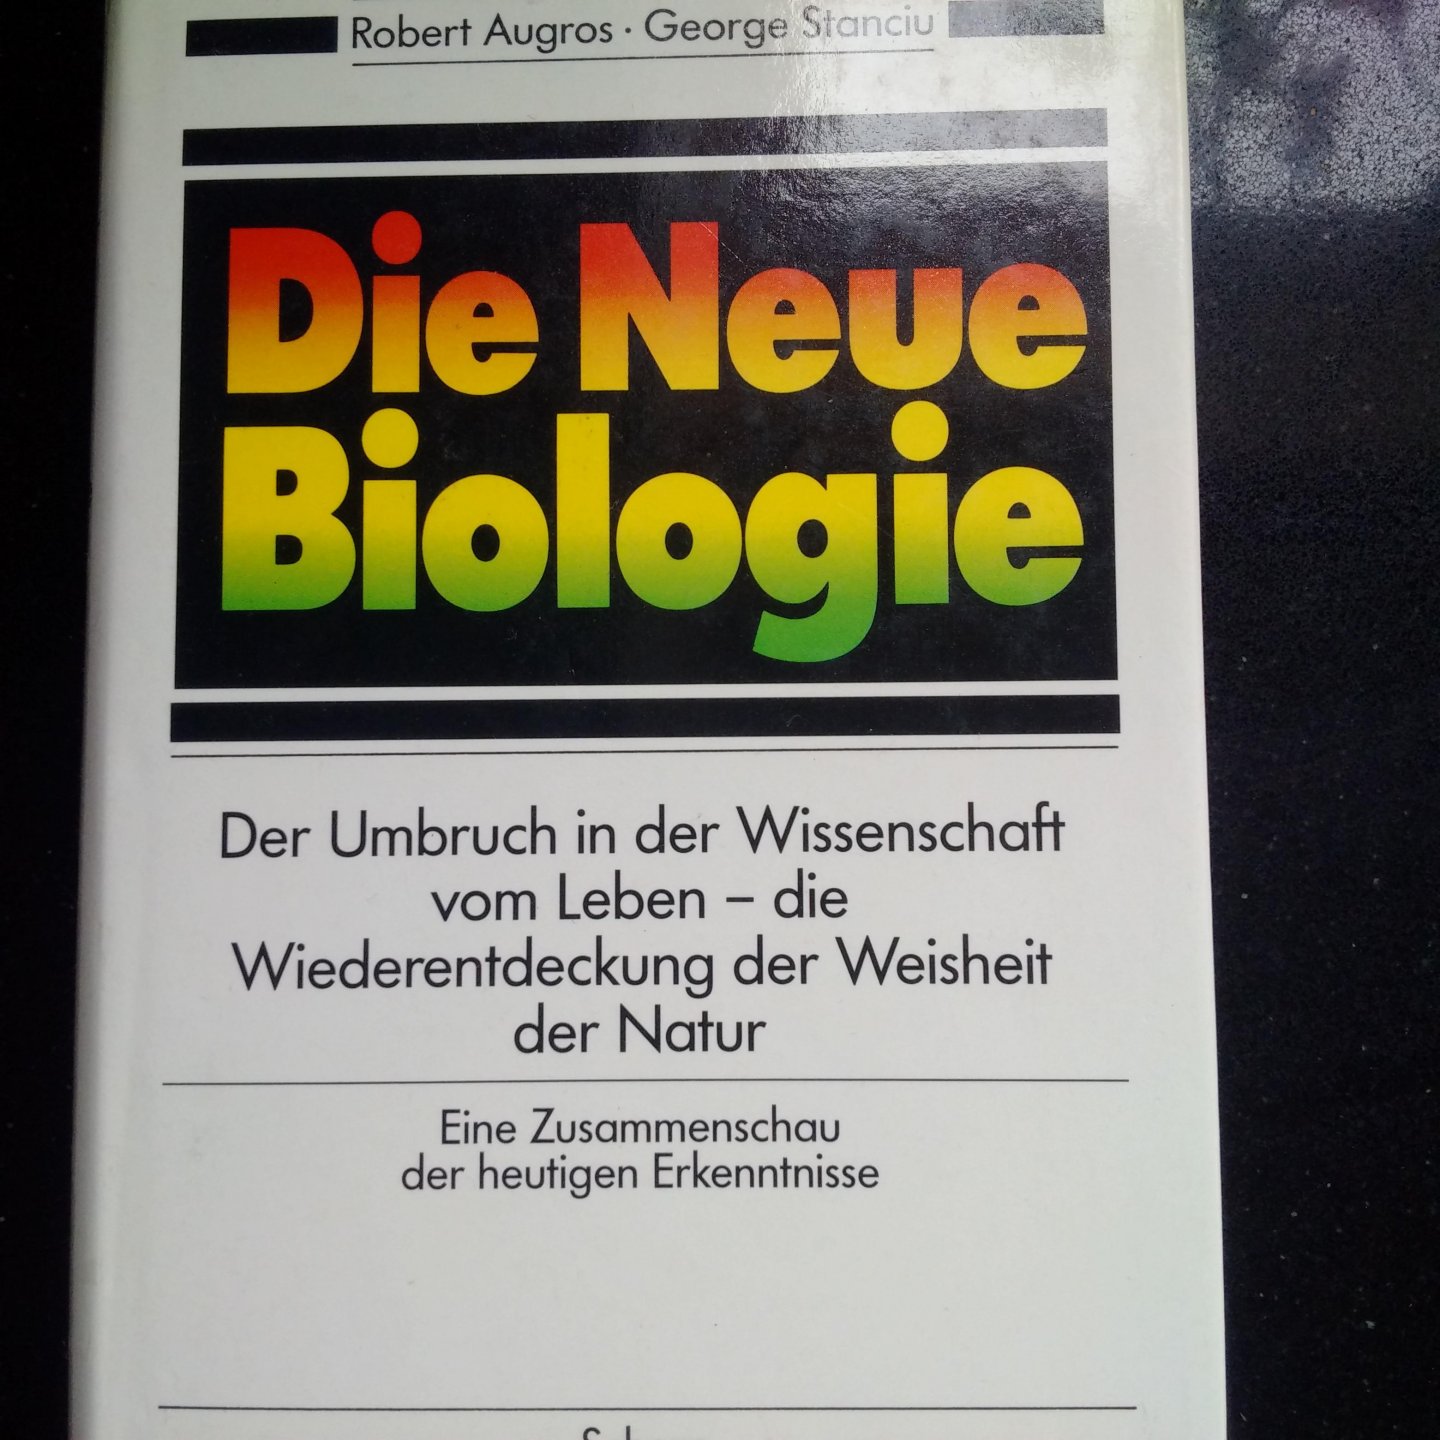 Augros, Robert & Stanciu, George - Die Neue biologie